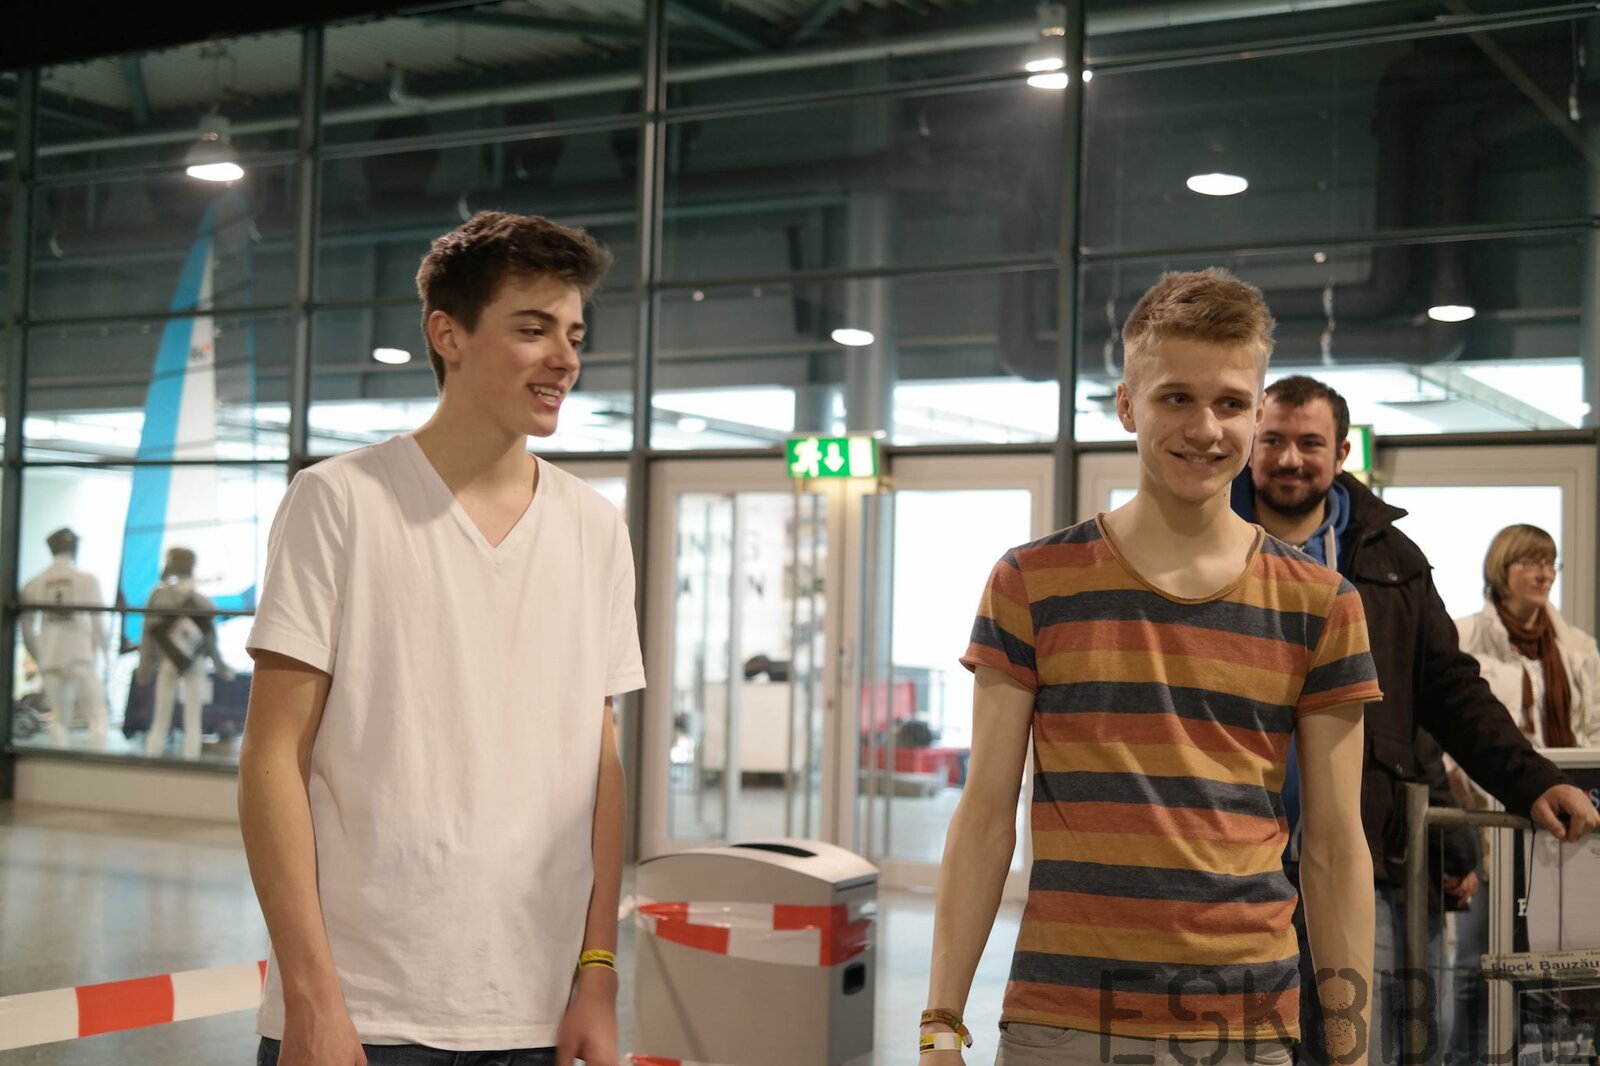 2. Indoor Elektro Skateboard Meisterschaft Passion 2015 in Bremen